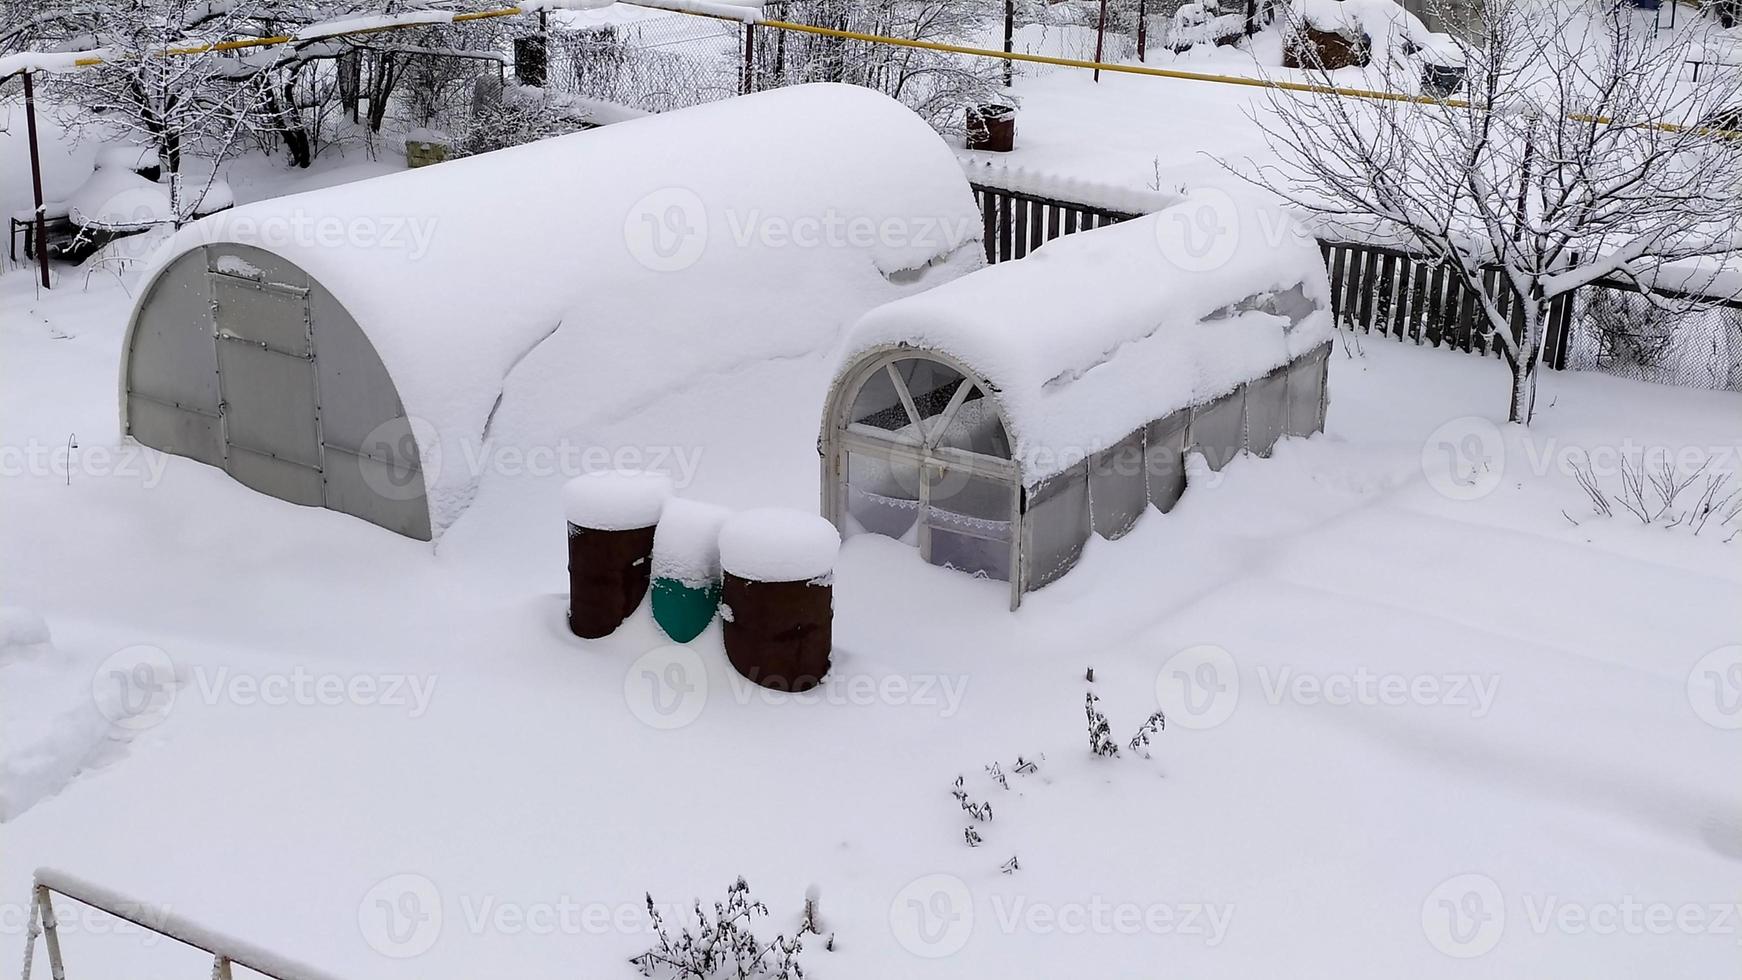 växthusen var täckta av snö. utsikt från ovan. grönsaksträdgård på vintern. pittoreska snöiga vinterlandskap. foto